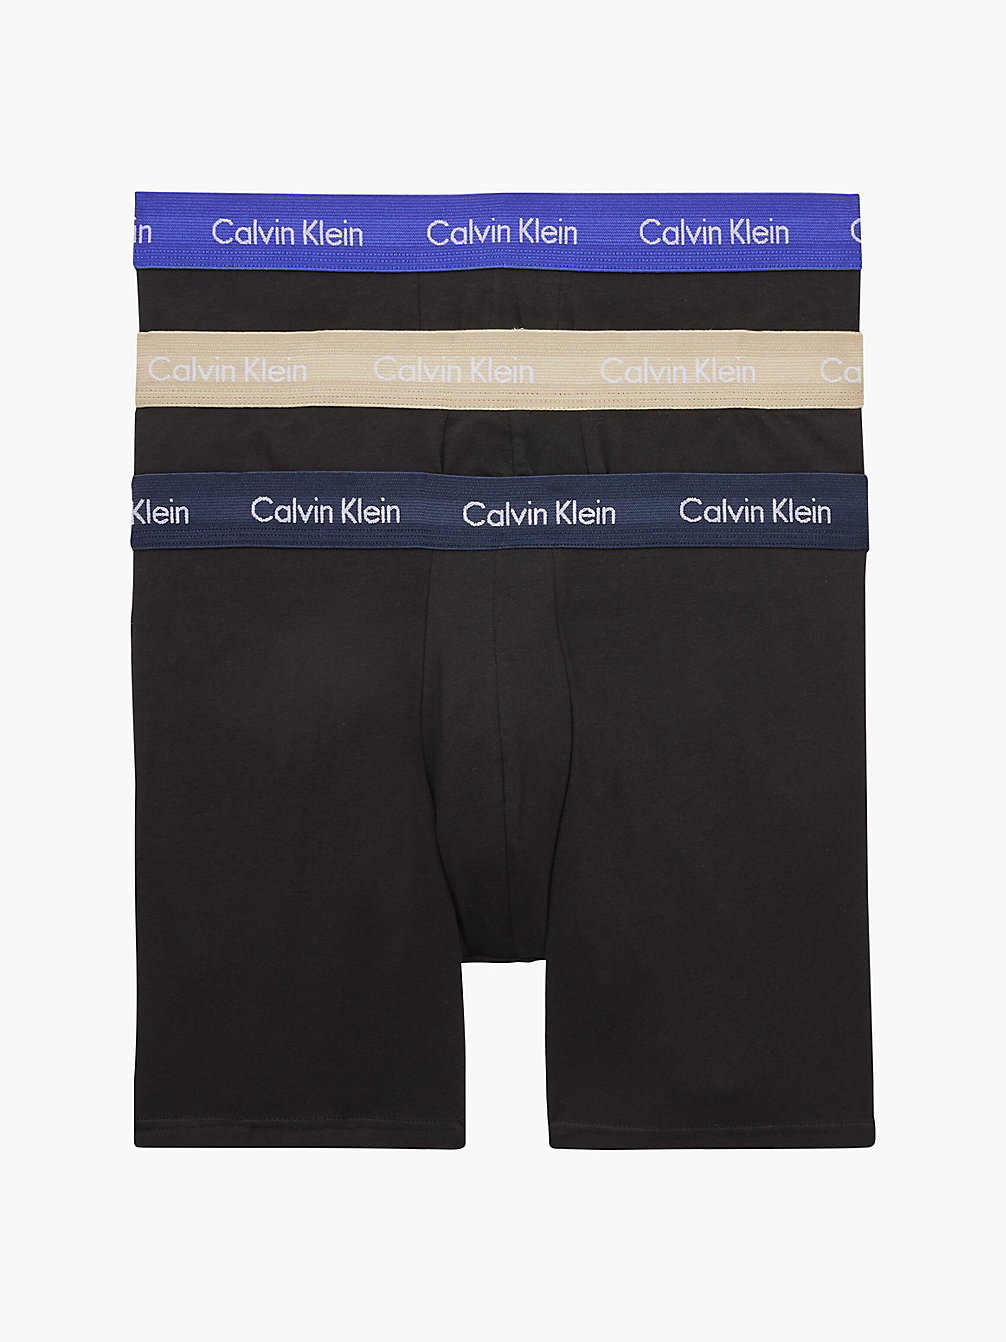 Boxer Aderenti Lunghi In Confezione Da 3 - Cotton Stretch > B-SHORELINE/ CLEM/ TRAVERTINE WB > undefined uomo > Calvin Klein